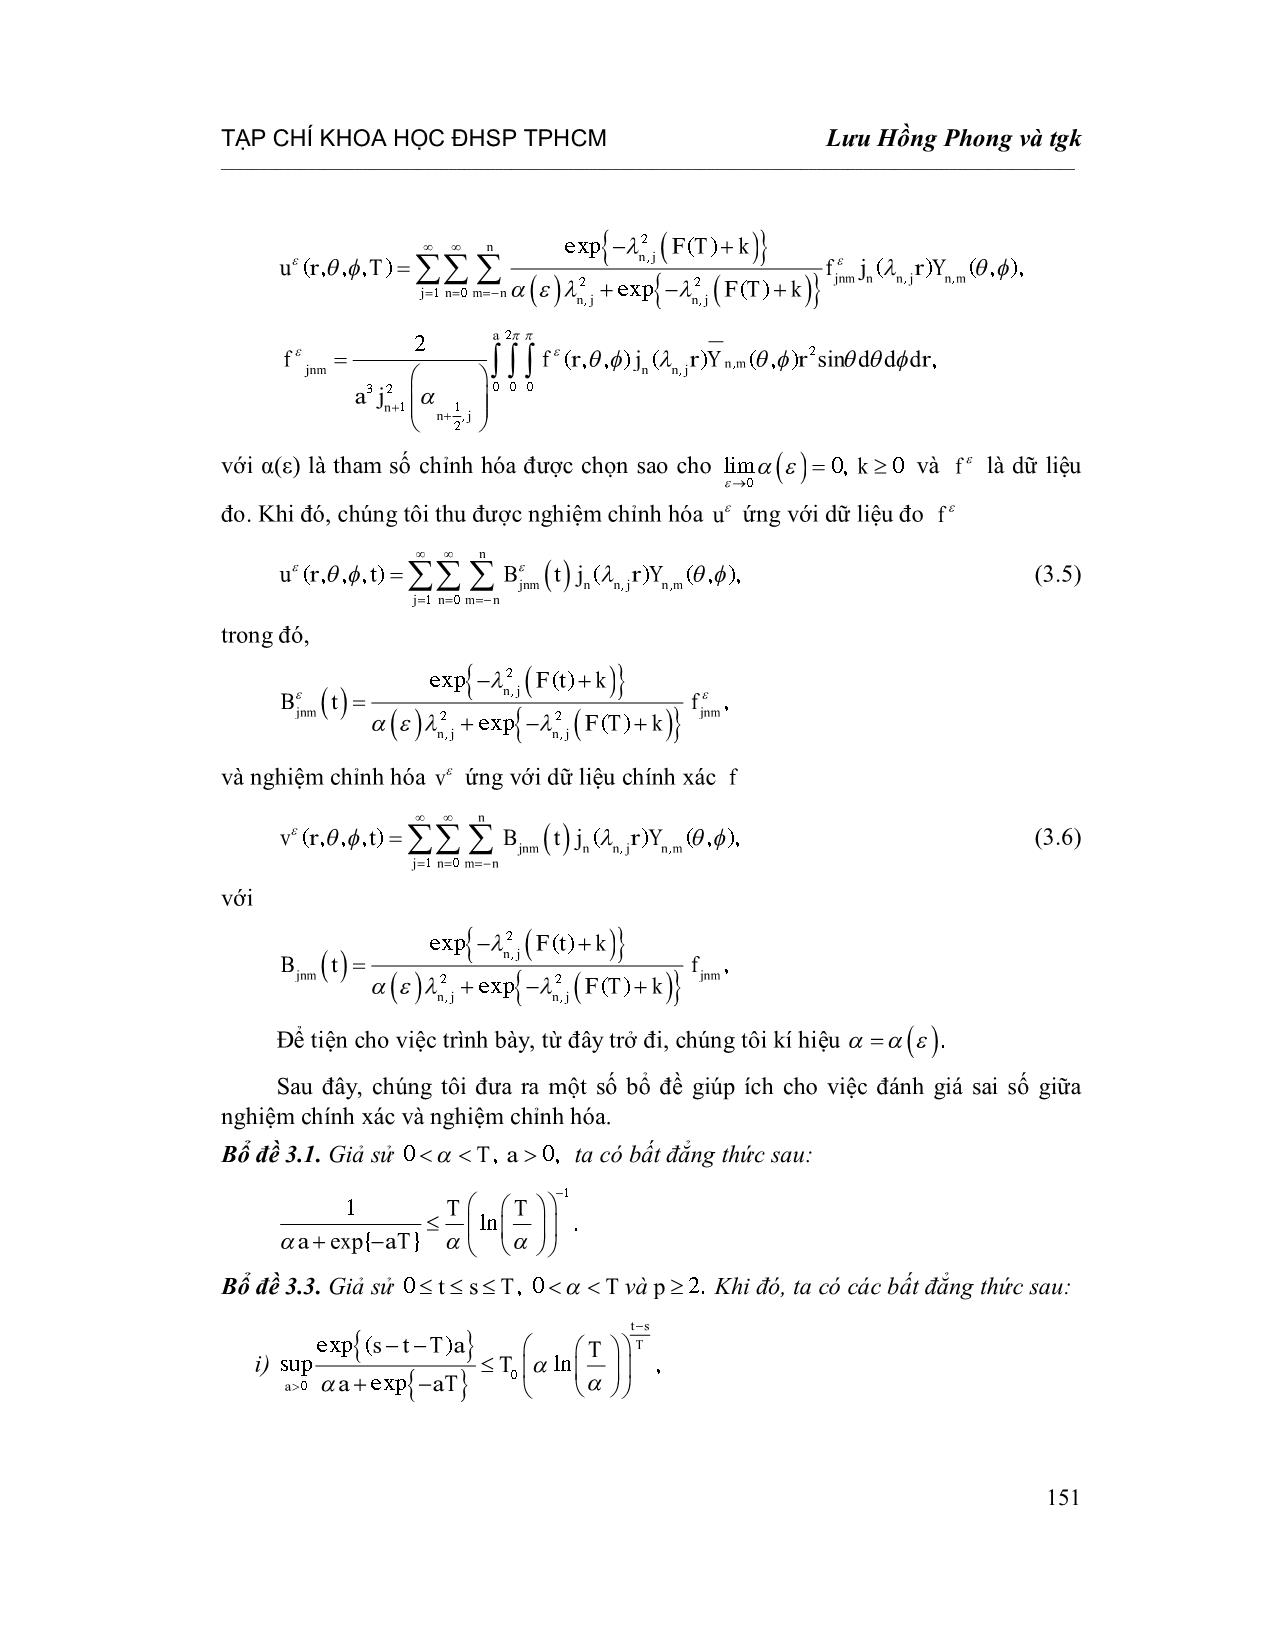 Chỉnh hóa bài toán nhiệt ngược với hệ số phụ thuộc thời gian trong tọa độ cầu trang 7